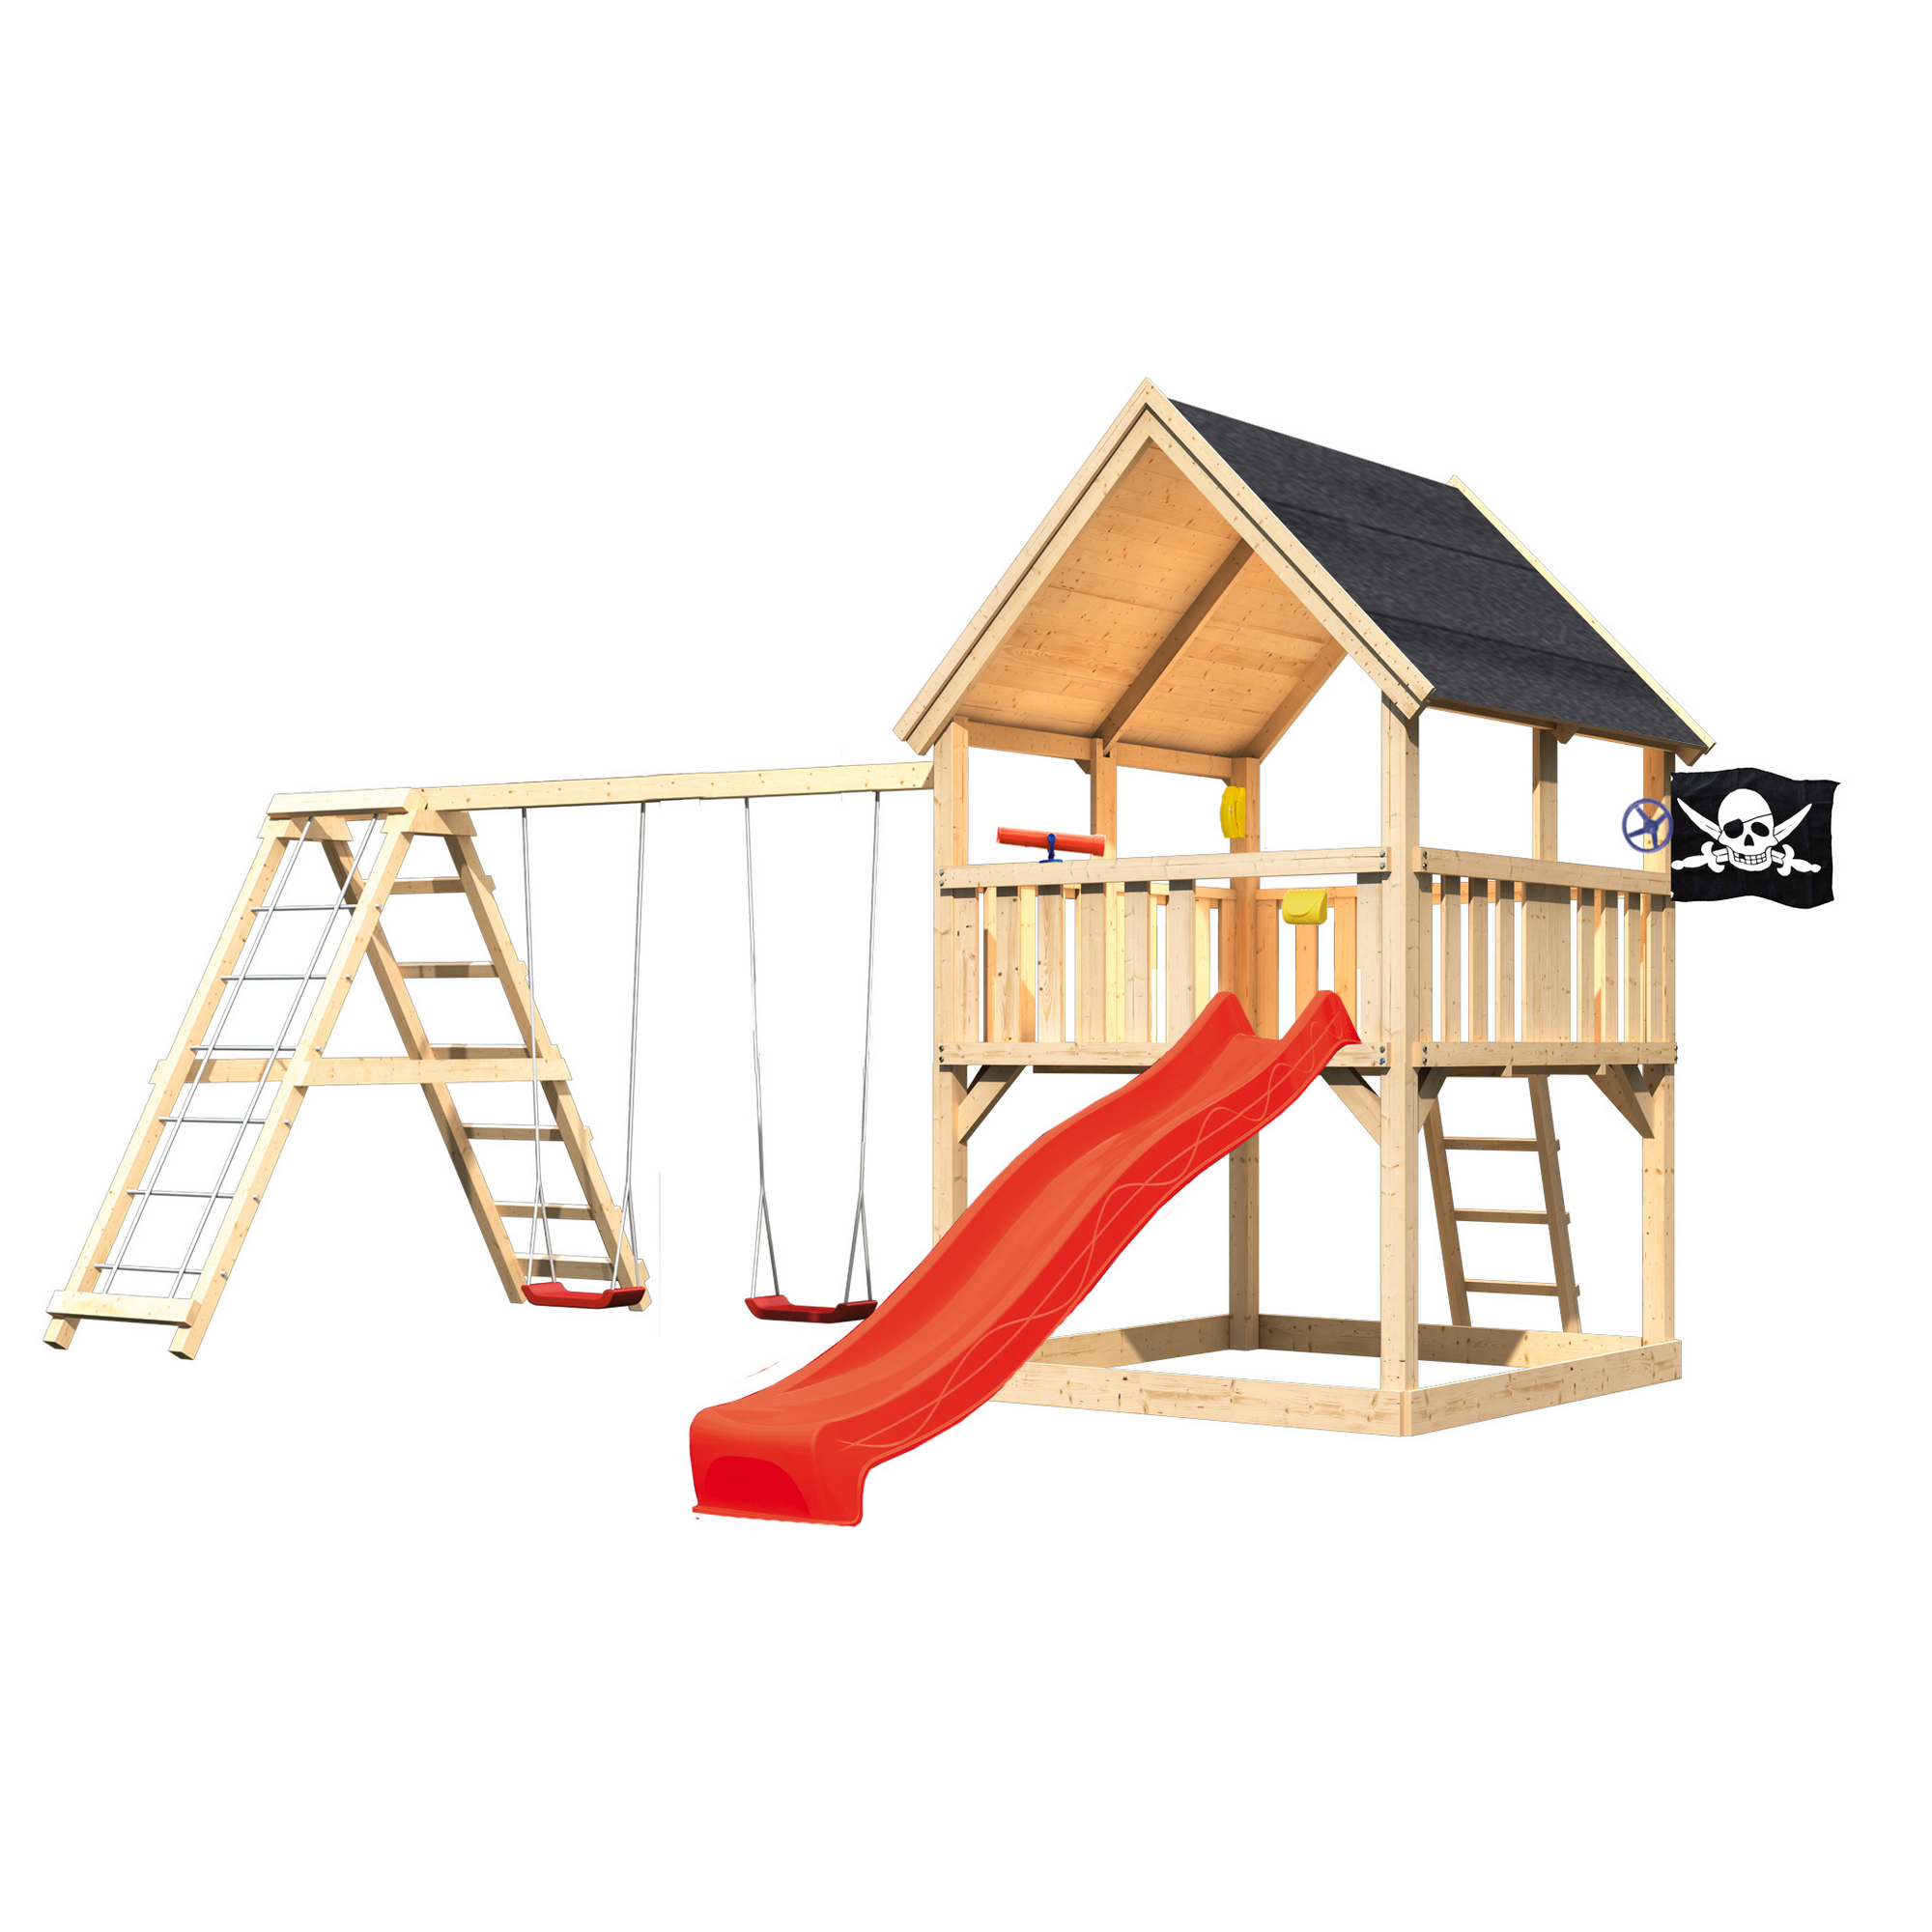 Kinderspielturm 'Marlen' mit Doppelschaukel und Rutsche natur 508 x 345 cm + product picture